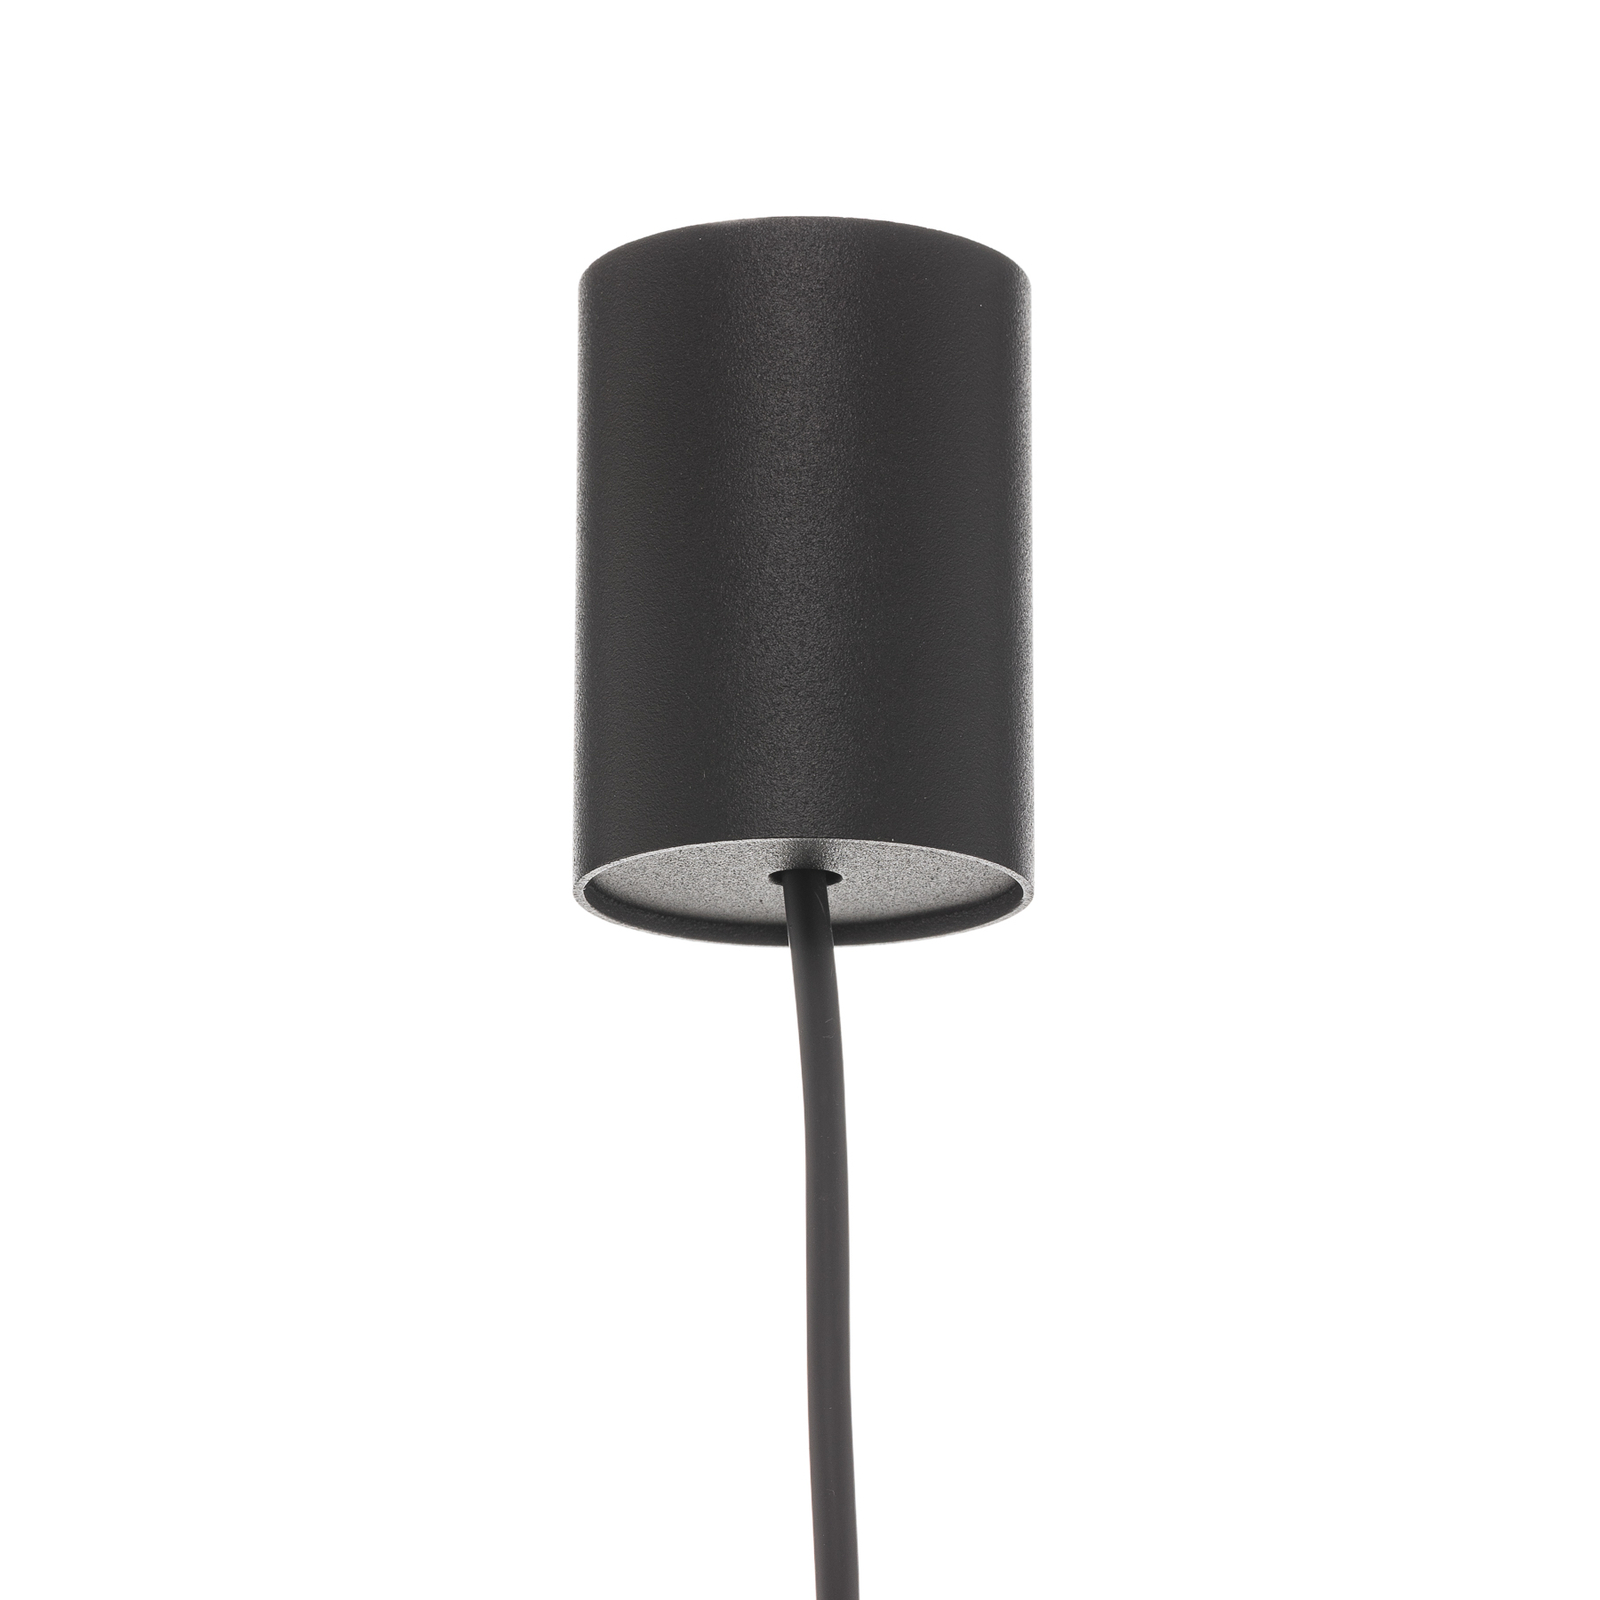 Hanglamp Las, 1-lamp, zwart, kap 49cm